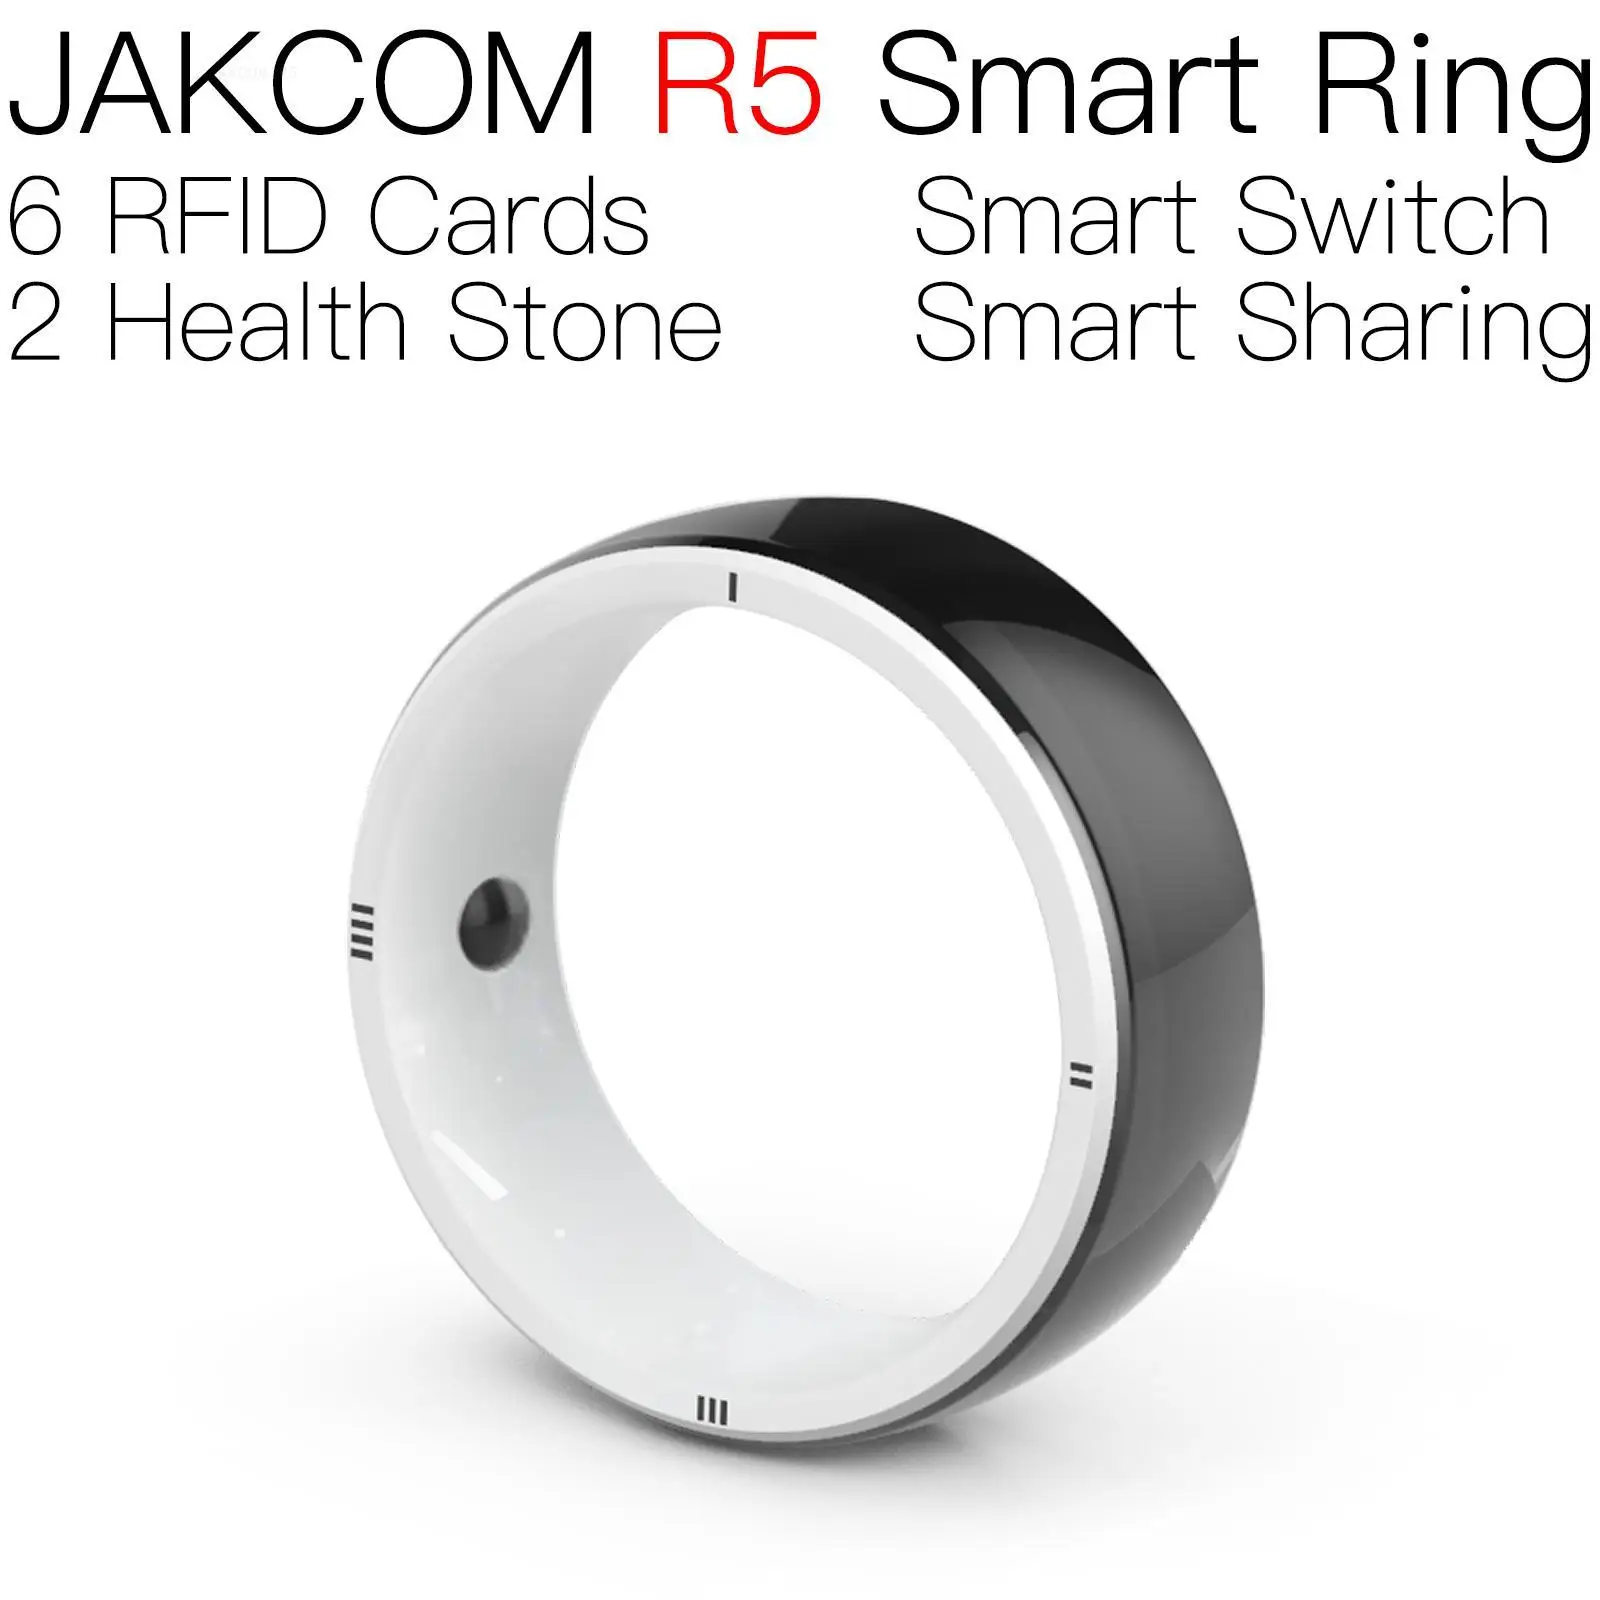 

Умное кольцо JAKCOM R5, красивое, чем стандартное программное обеспечение 2, обновленный carte koala, радиочастотный идентификатор, гоночные электронные кольца голубей, uhf rfid mobile